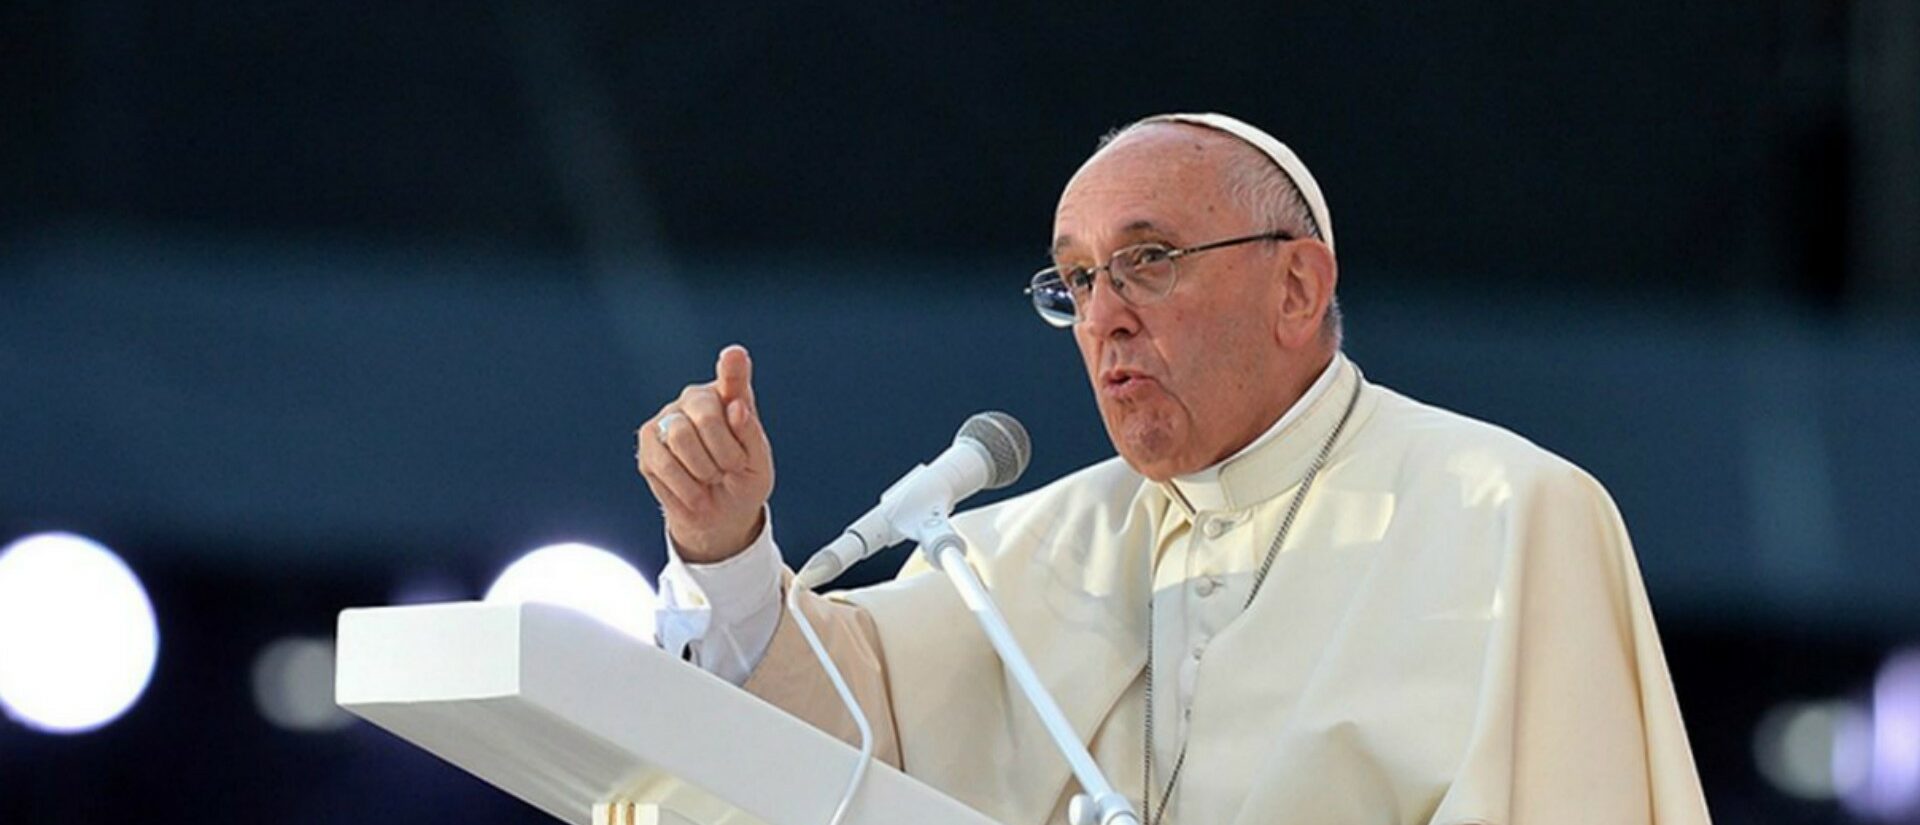 «Une foi pas inculturée n’est pas authentique», a prévenu le pape | © Mazur/episkopat.pl 